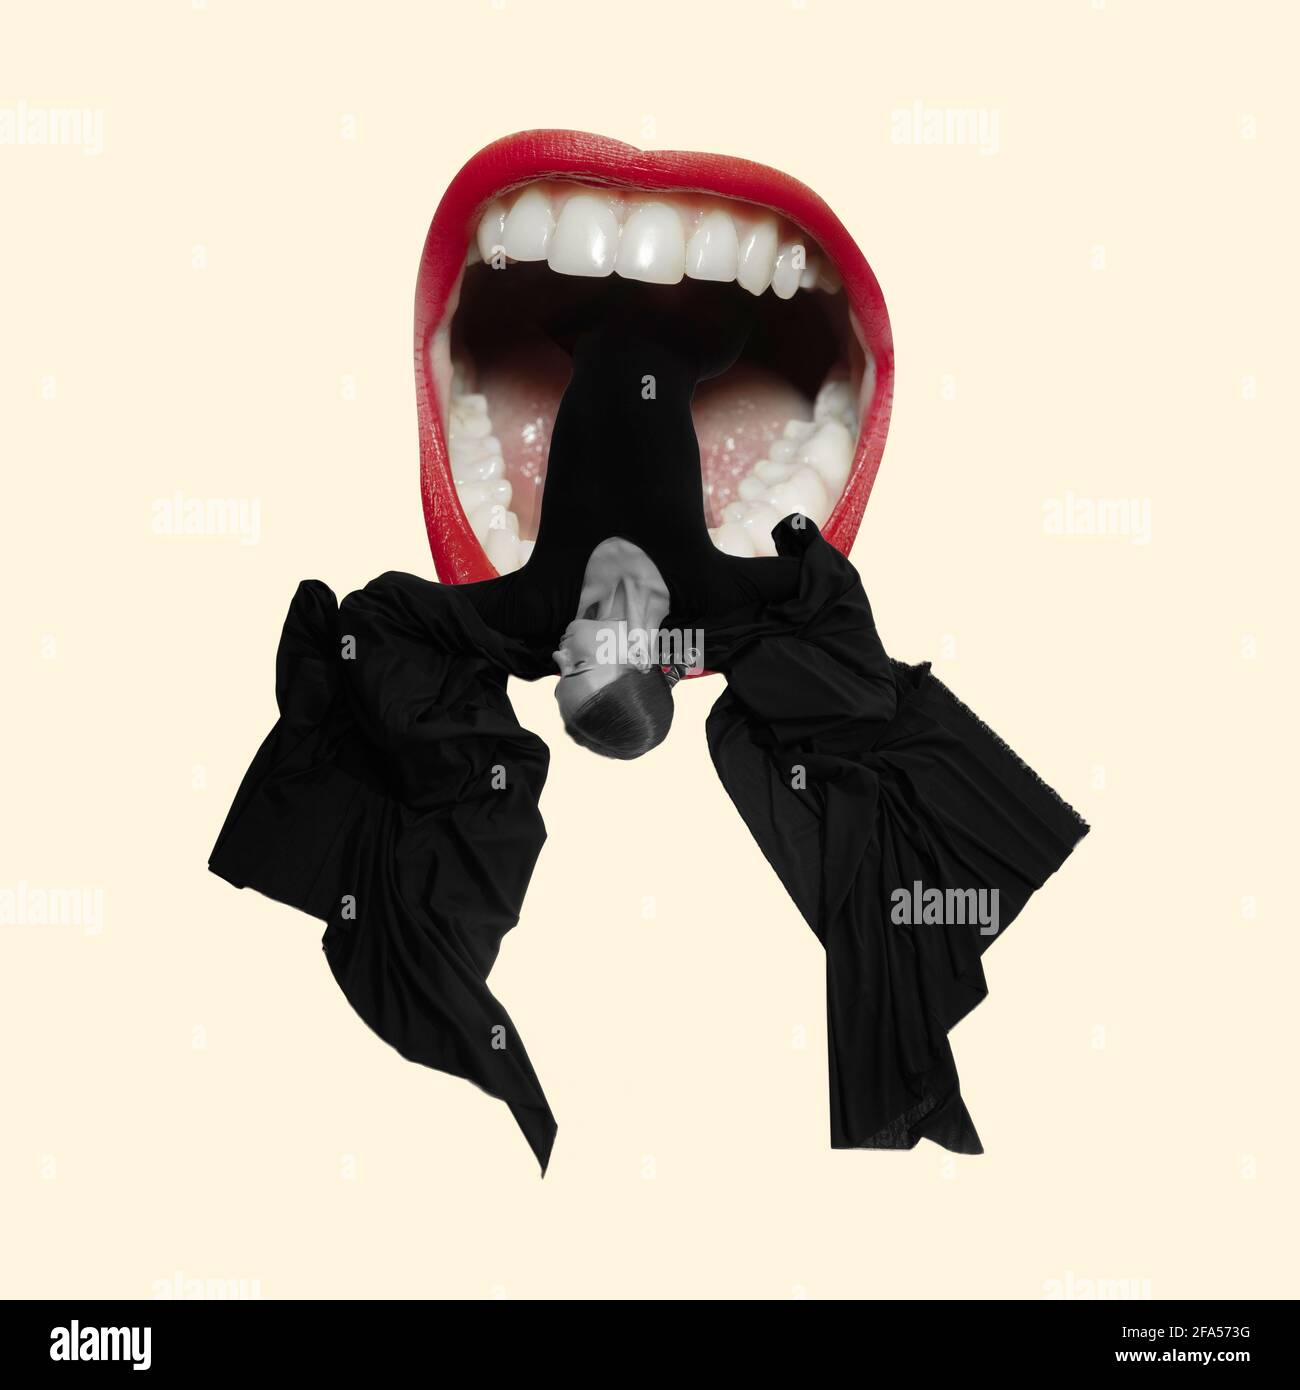 Collage de arte contemporáneo, diseño moderno. Estilo RETRO. Bailarina de moda en tela negra acostada en boca femenina grande con labios rojos Foto de stock